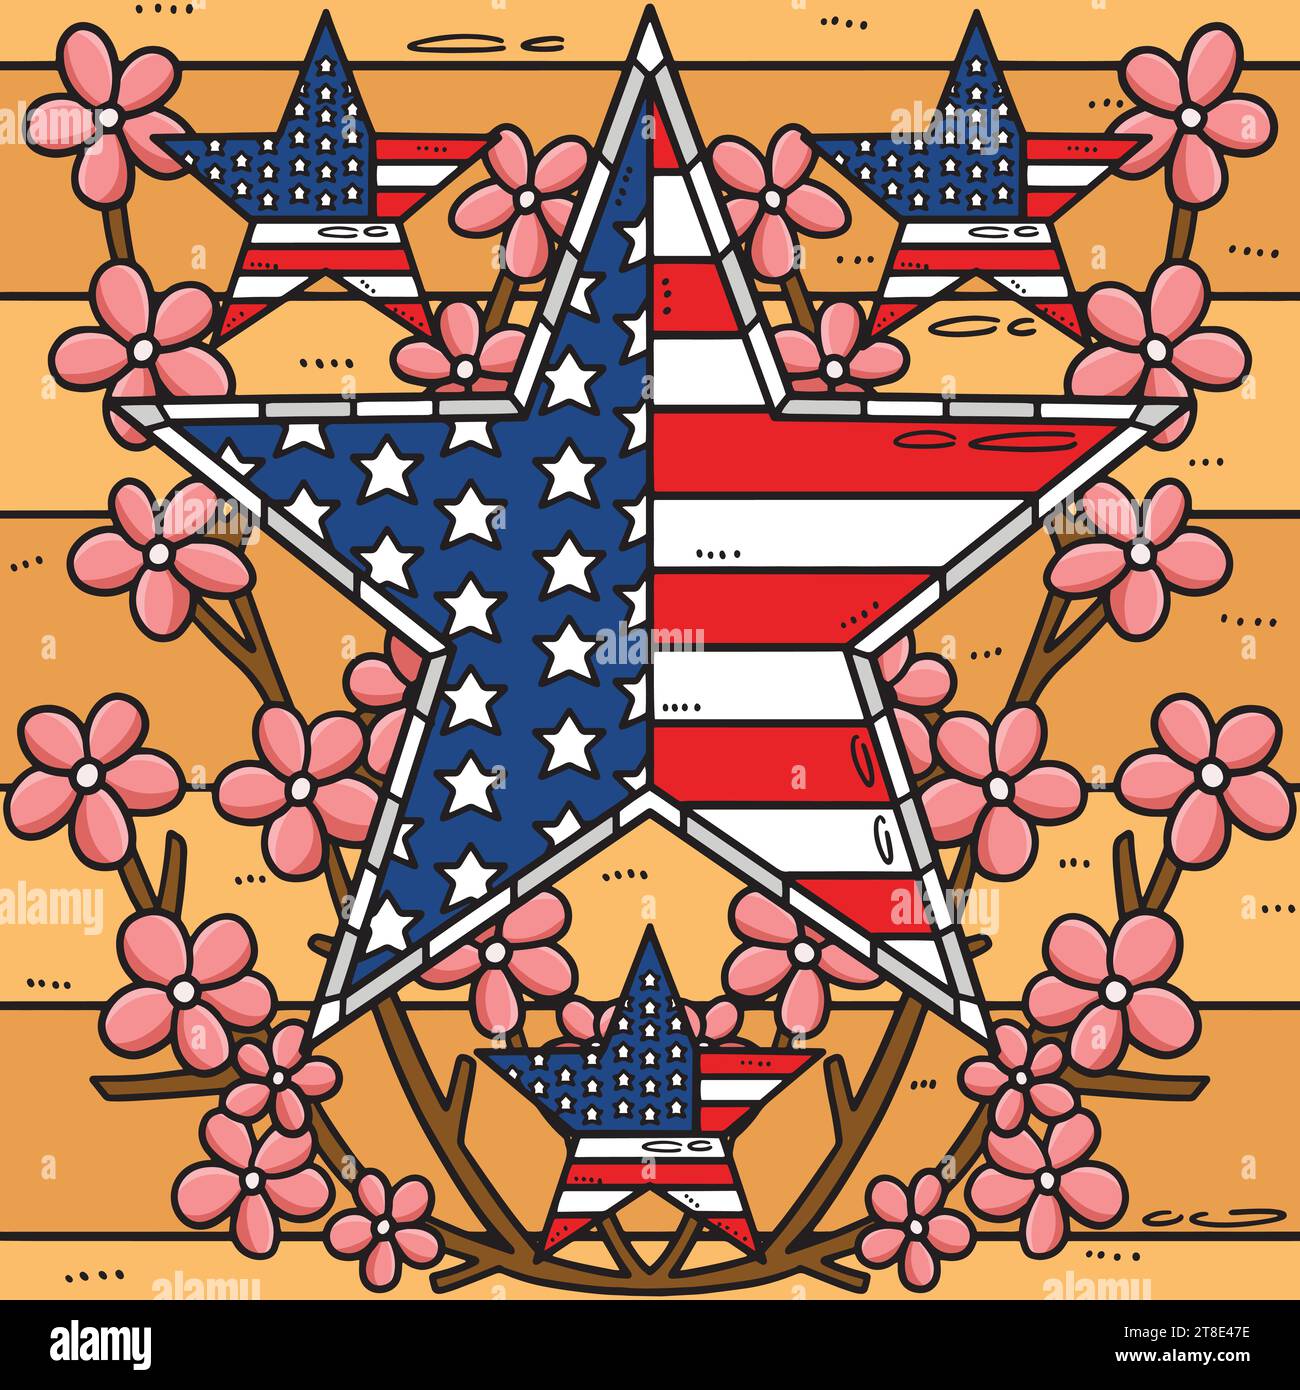 Memorial Day Star US Flag Blumen farbiger Cartoon Stock Vektor